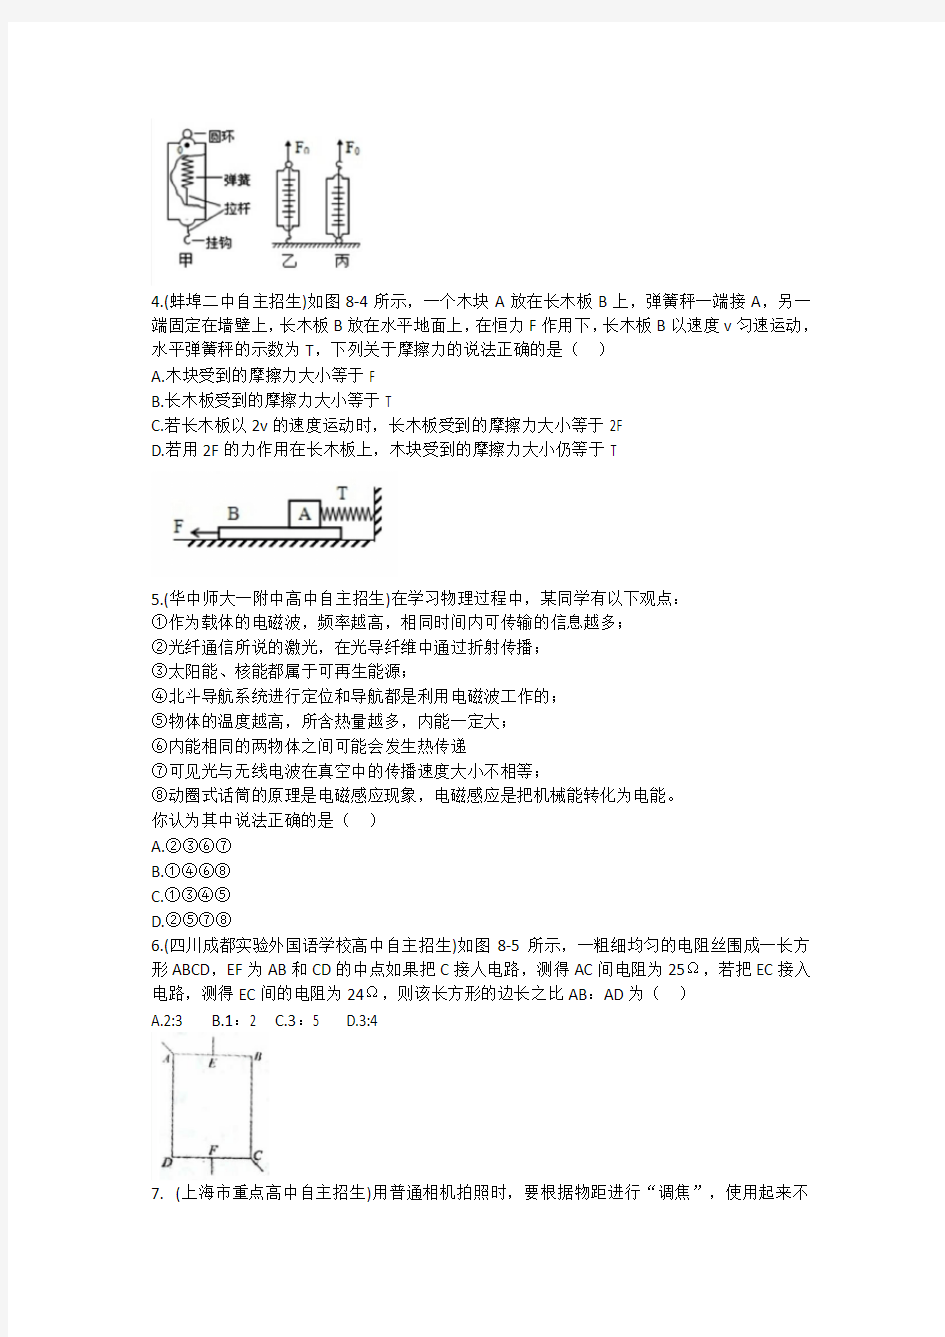 湖北省黄梅县分路中学2019-2020九年级理科实验班考试物理考试试卷(八)